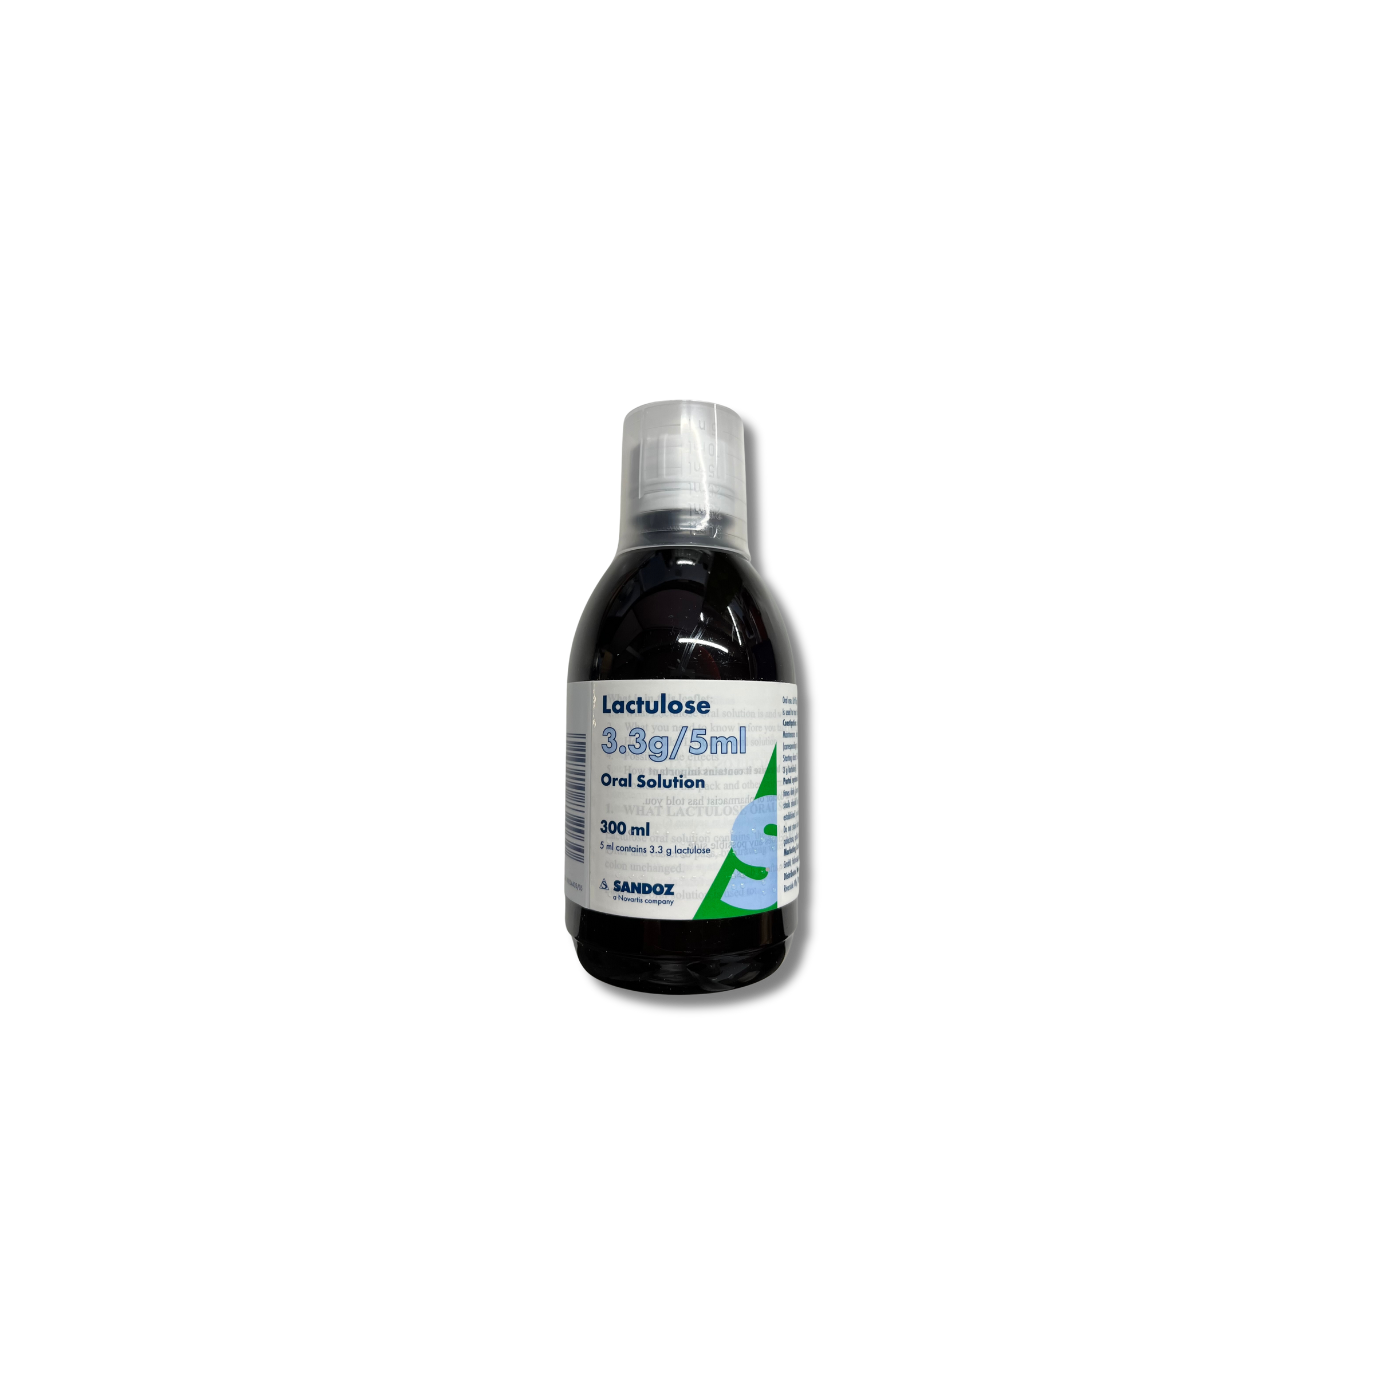 Lactulose 3.3g/5ml Oral Solution - 300ml